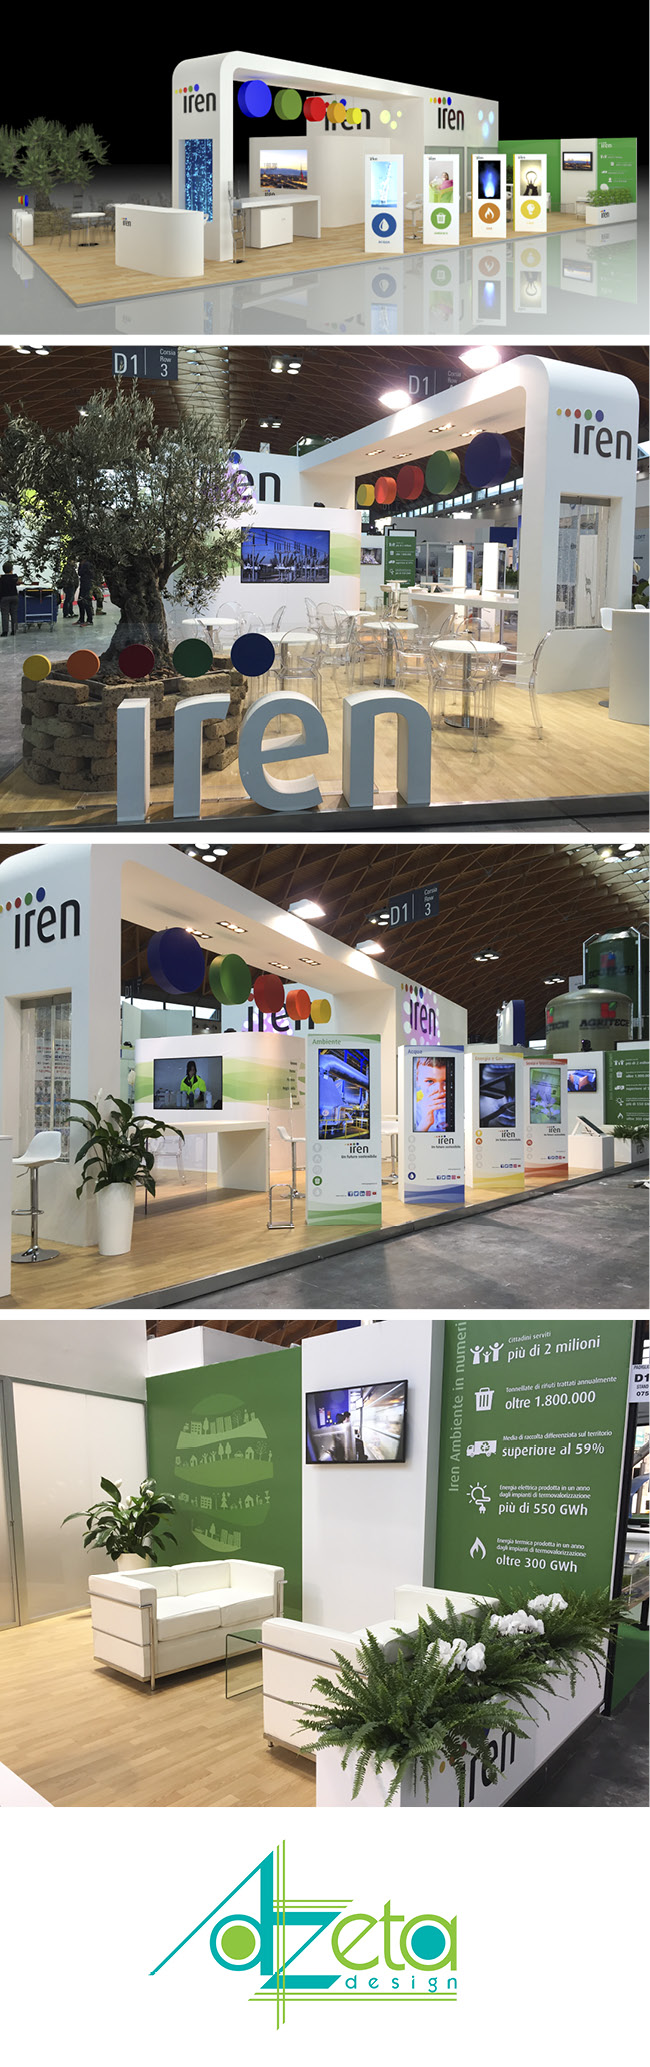 Stand dell’azienda Iren realizzato da Azeta design in occasione della fiera Ecomondo tenuta nella città di Rimini (IT).